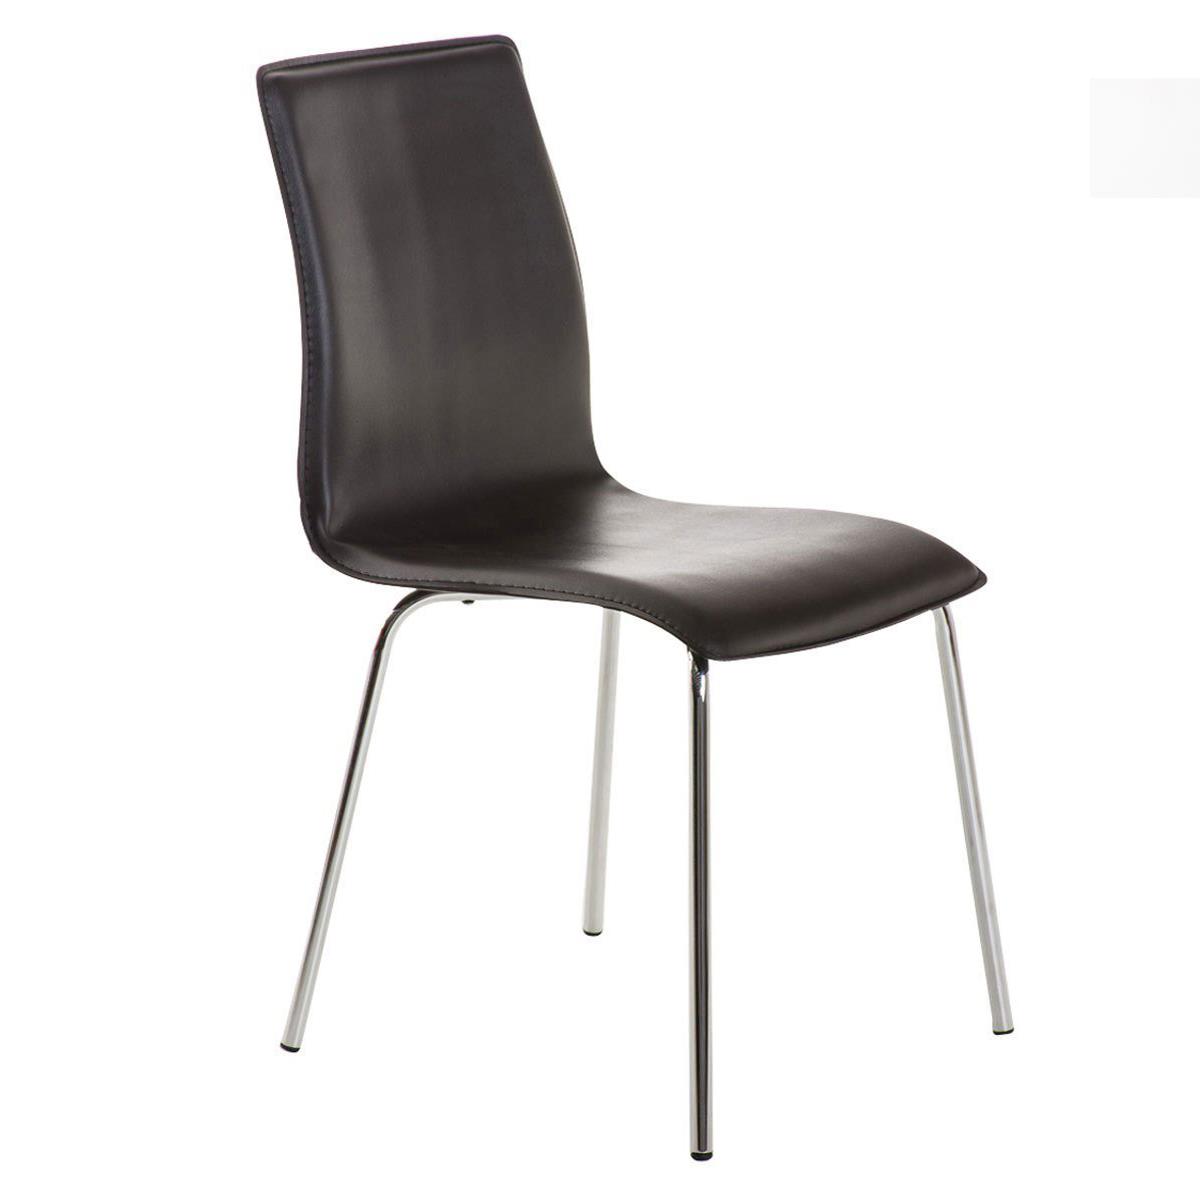 Cadeira de Visita MIKI, Design Exclusivo, Forrada Em Pele, Cor Castanho